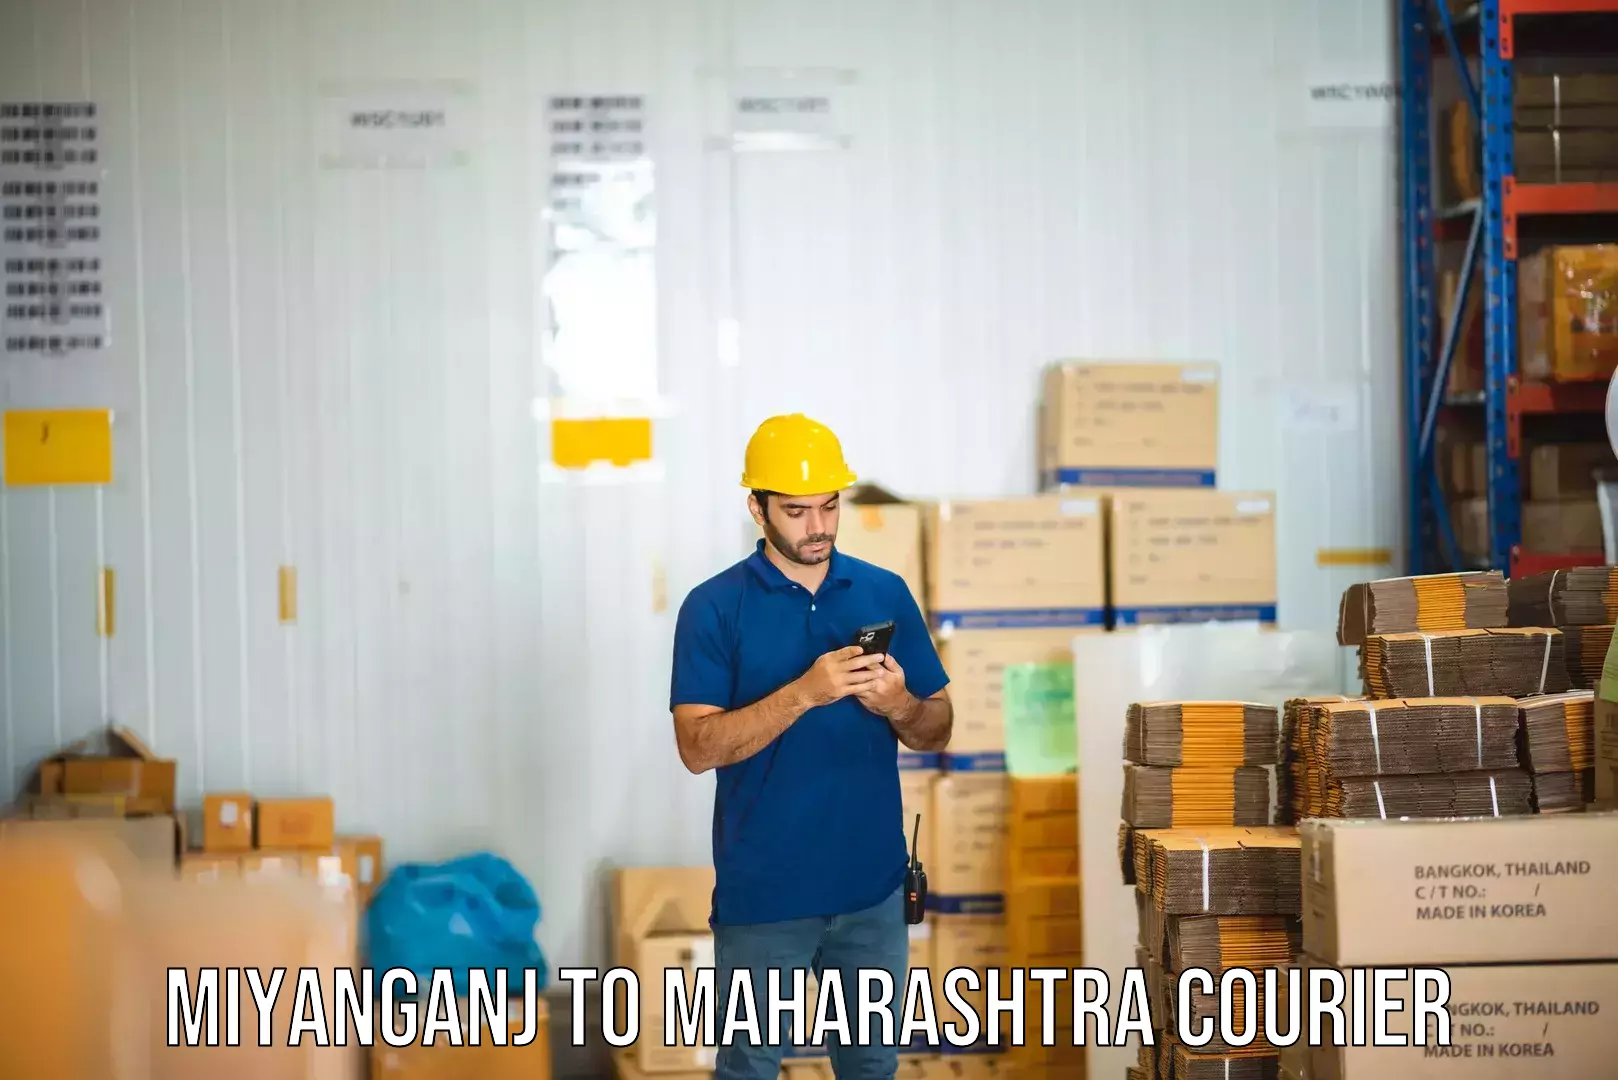 24/7 shipping services Miyanganj to Mahabaleshwar